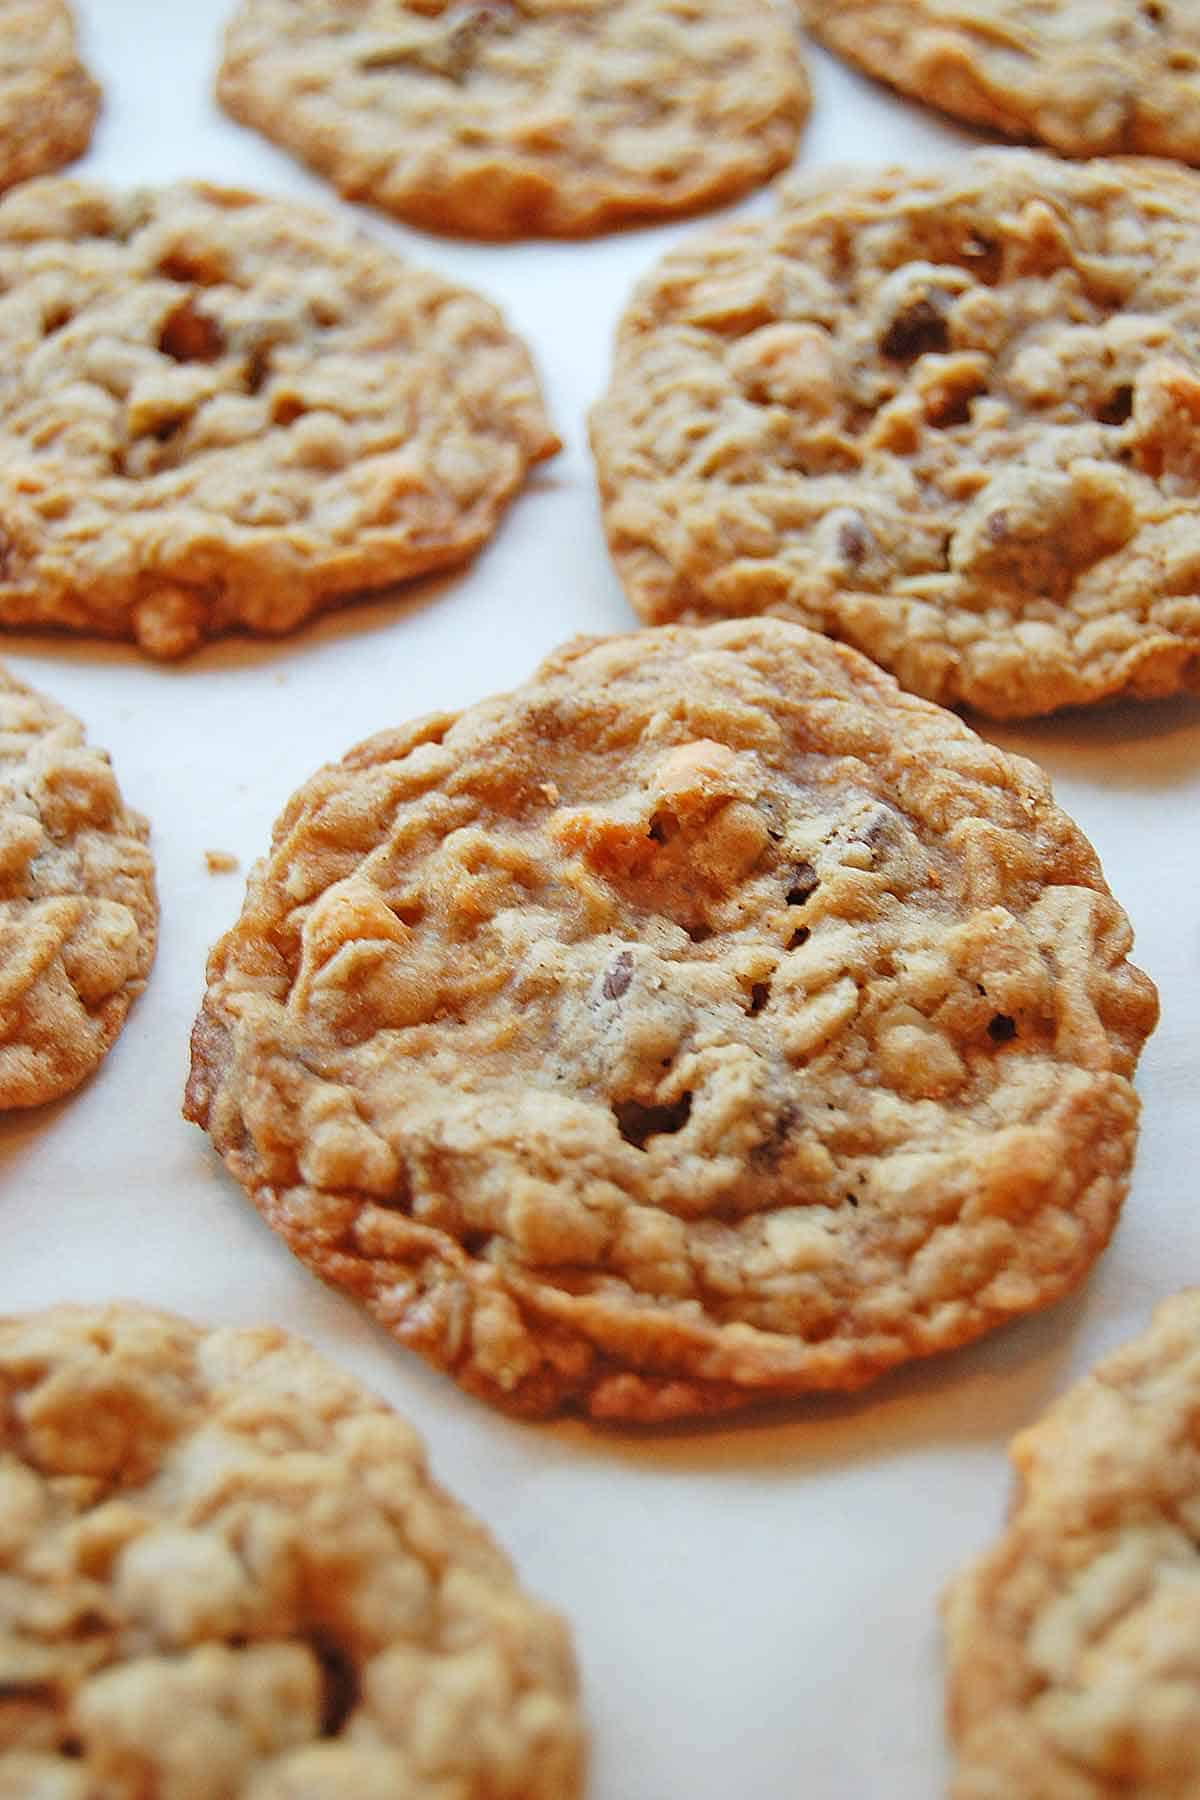 A dozen just-baked oatmeal butterscotch chocolate chip cookies.